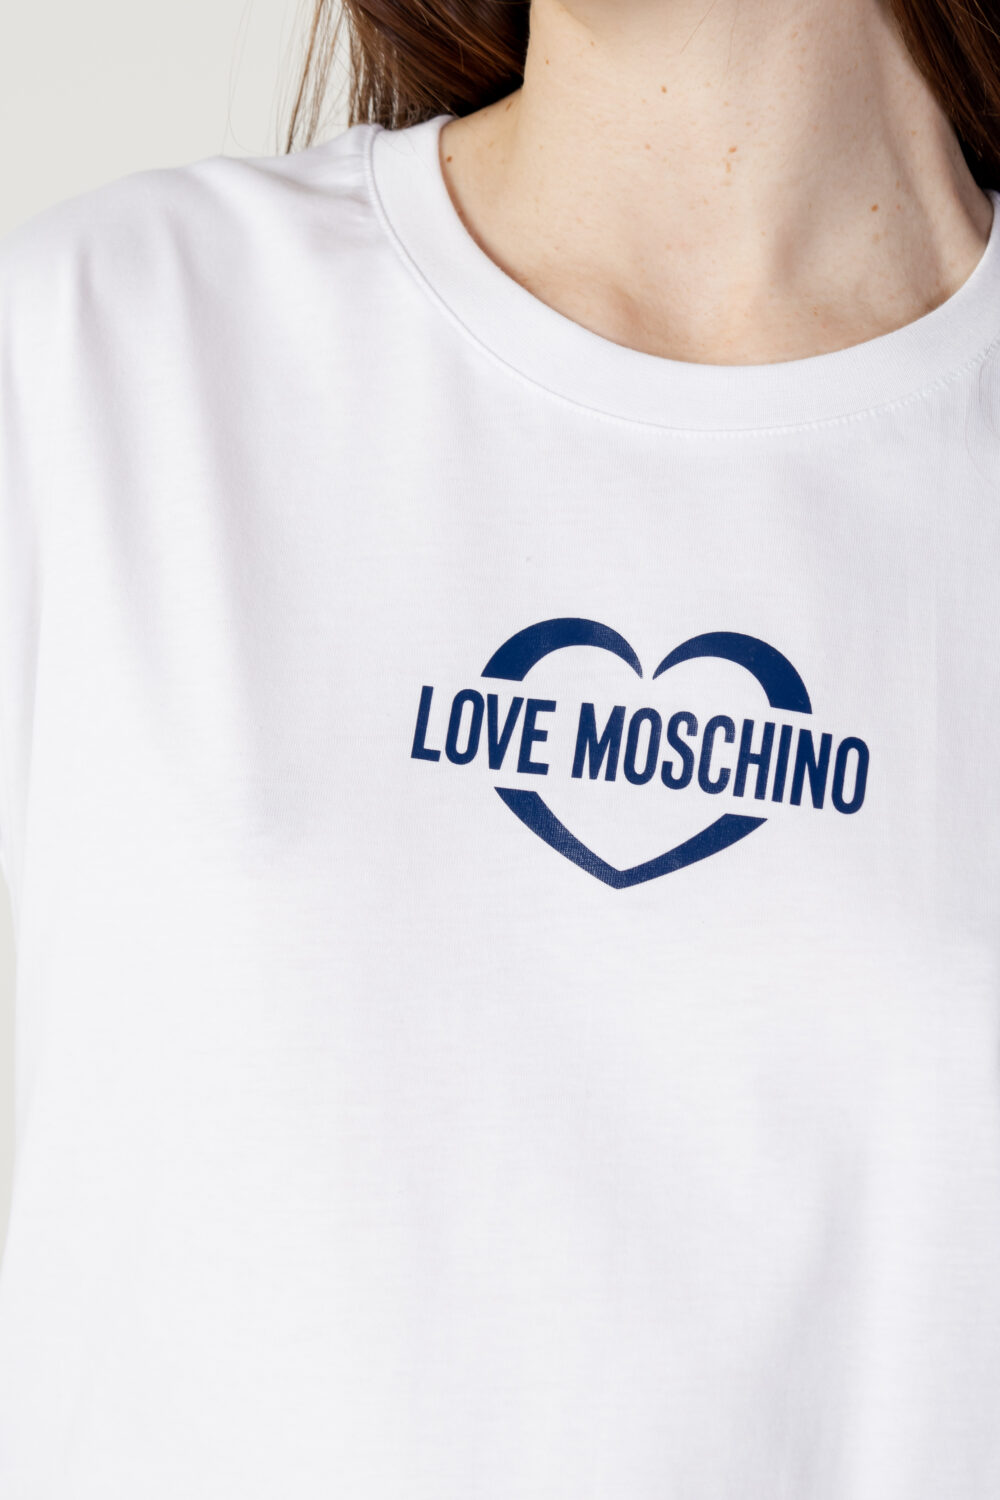 Vestito corto Love Moschino stampa logo cuore Bianco - Foto 2